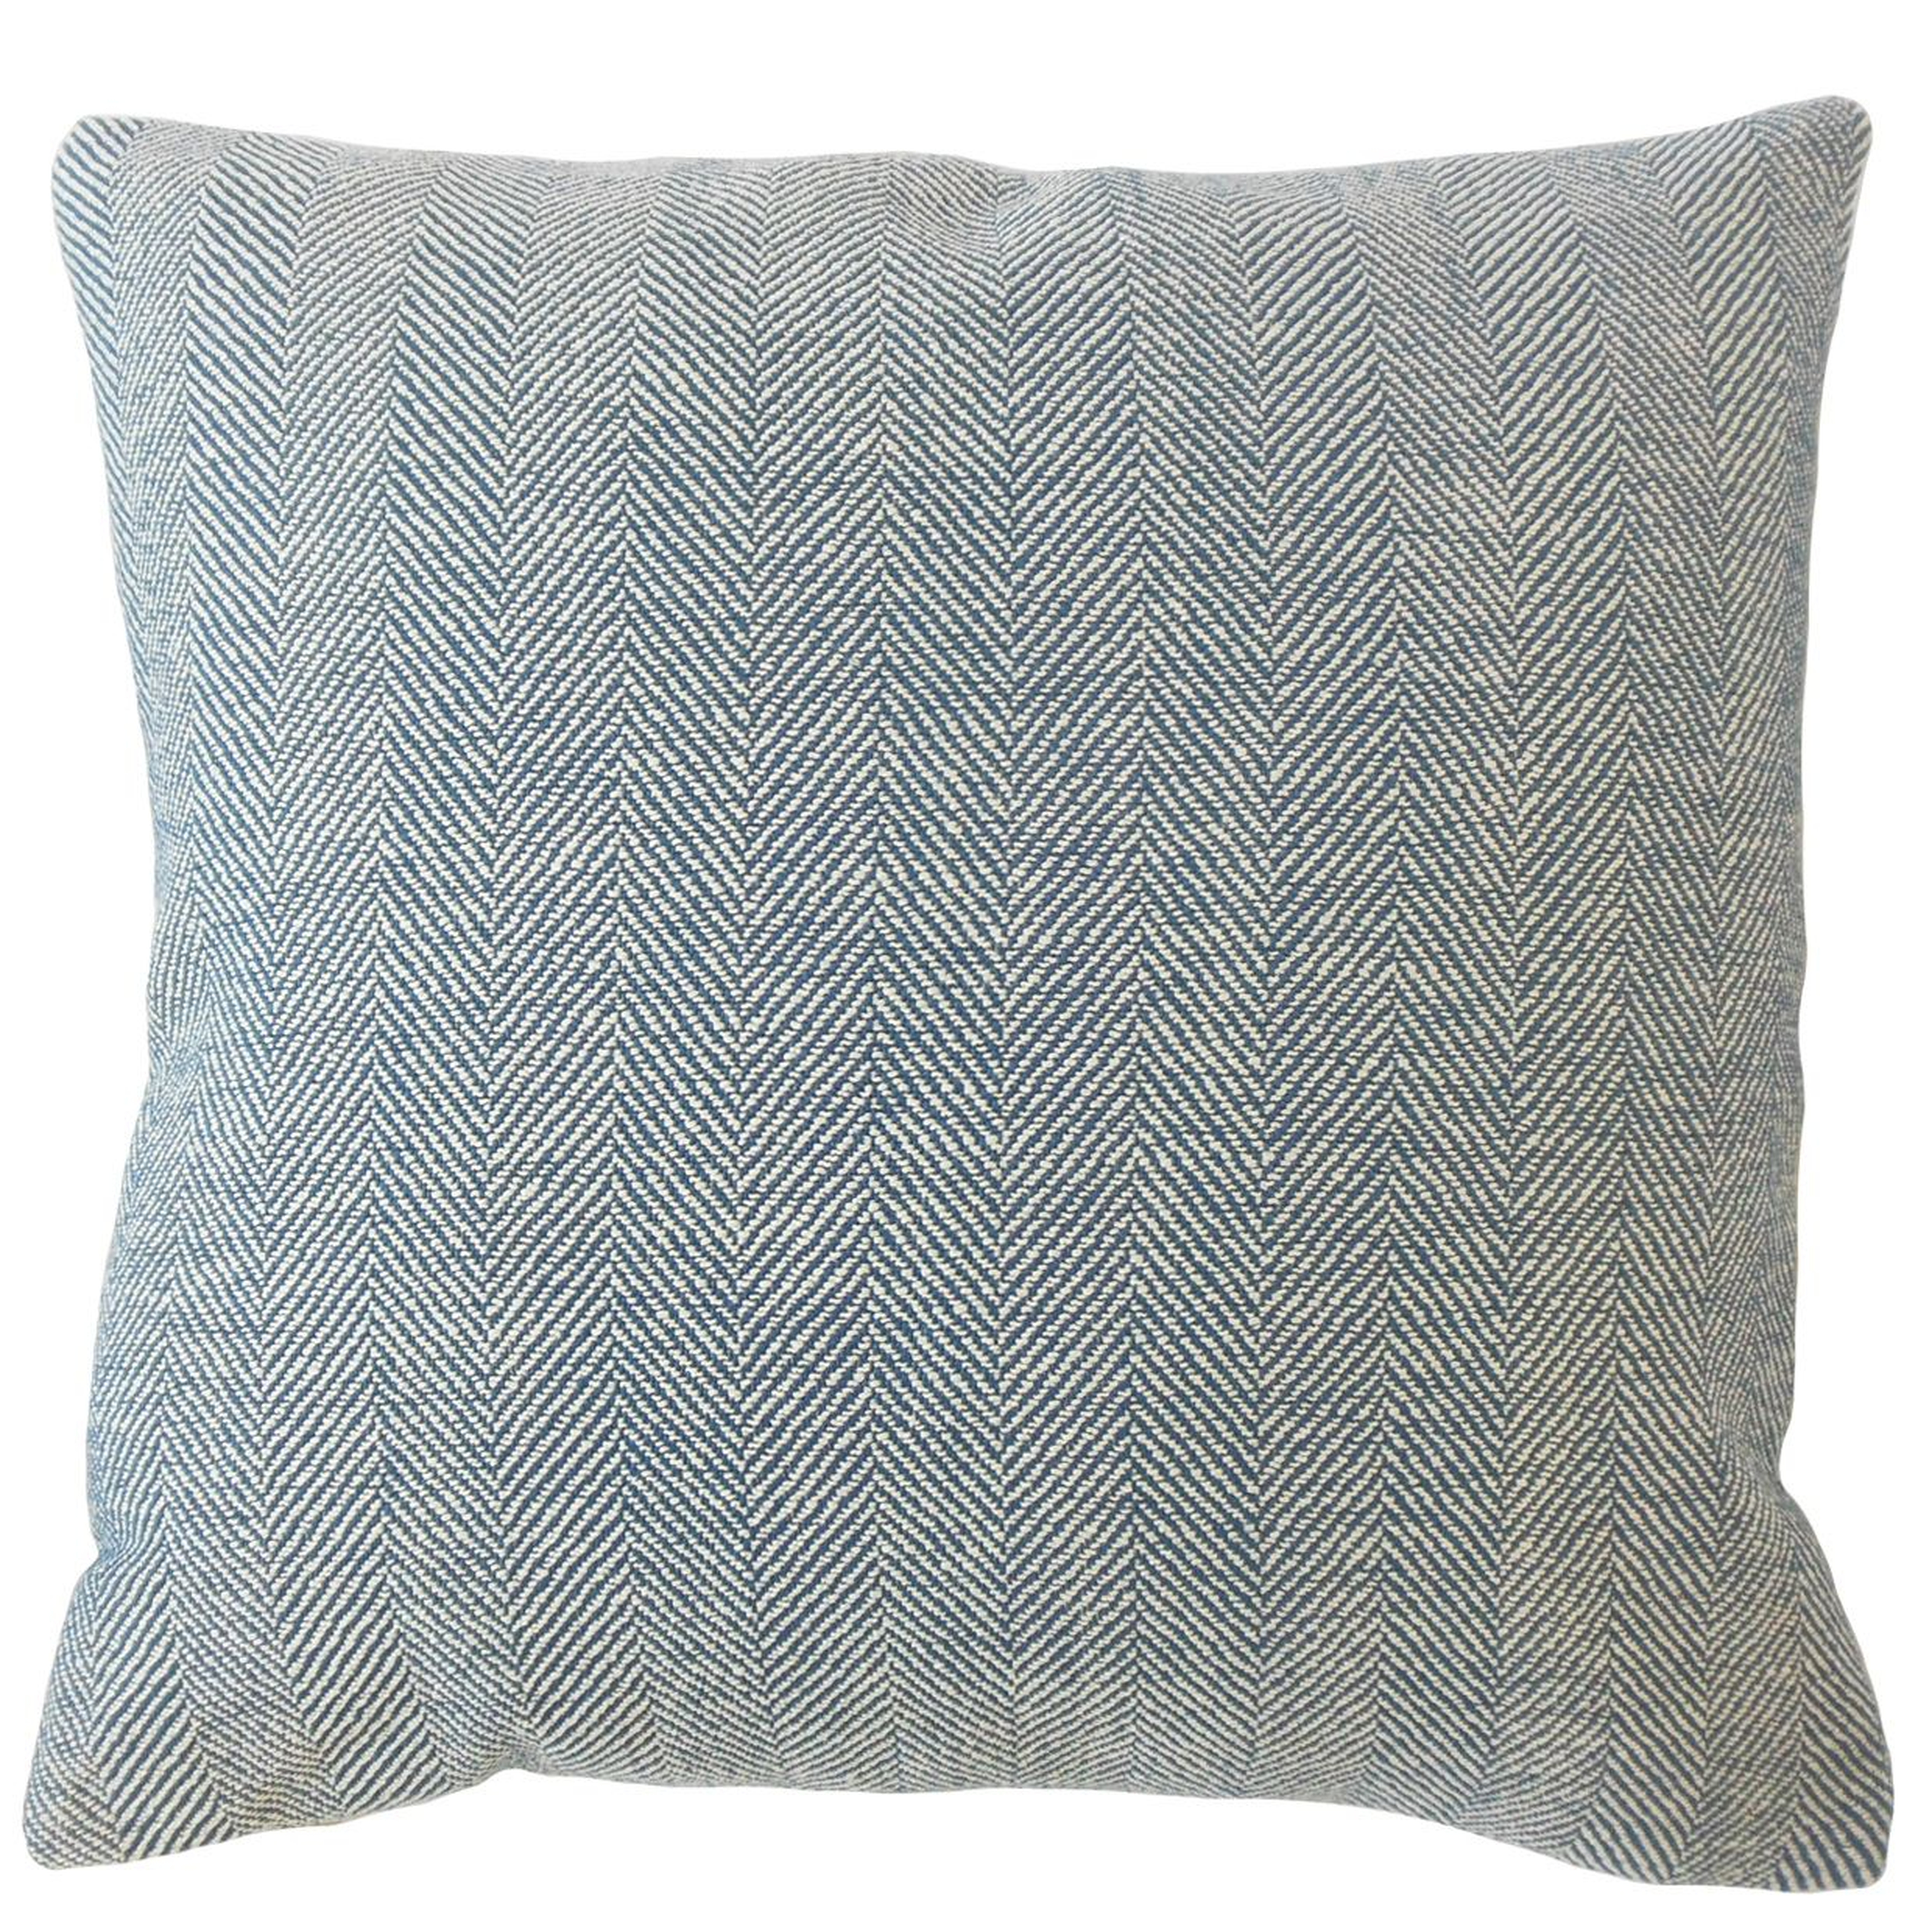 Linen Herringbone Pillow, Pacific, 22" x 22" - Havenly Essentials